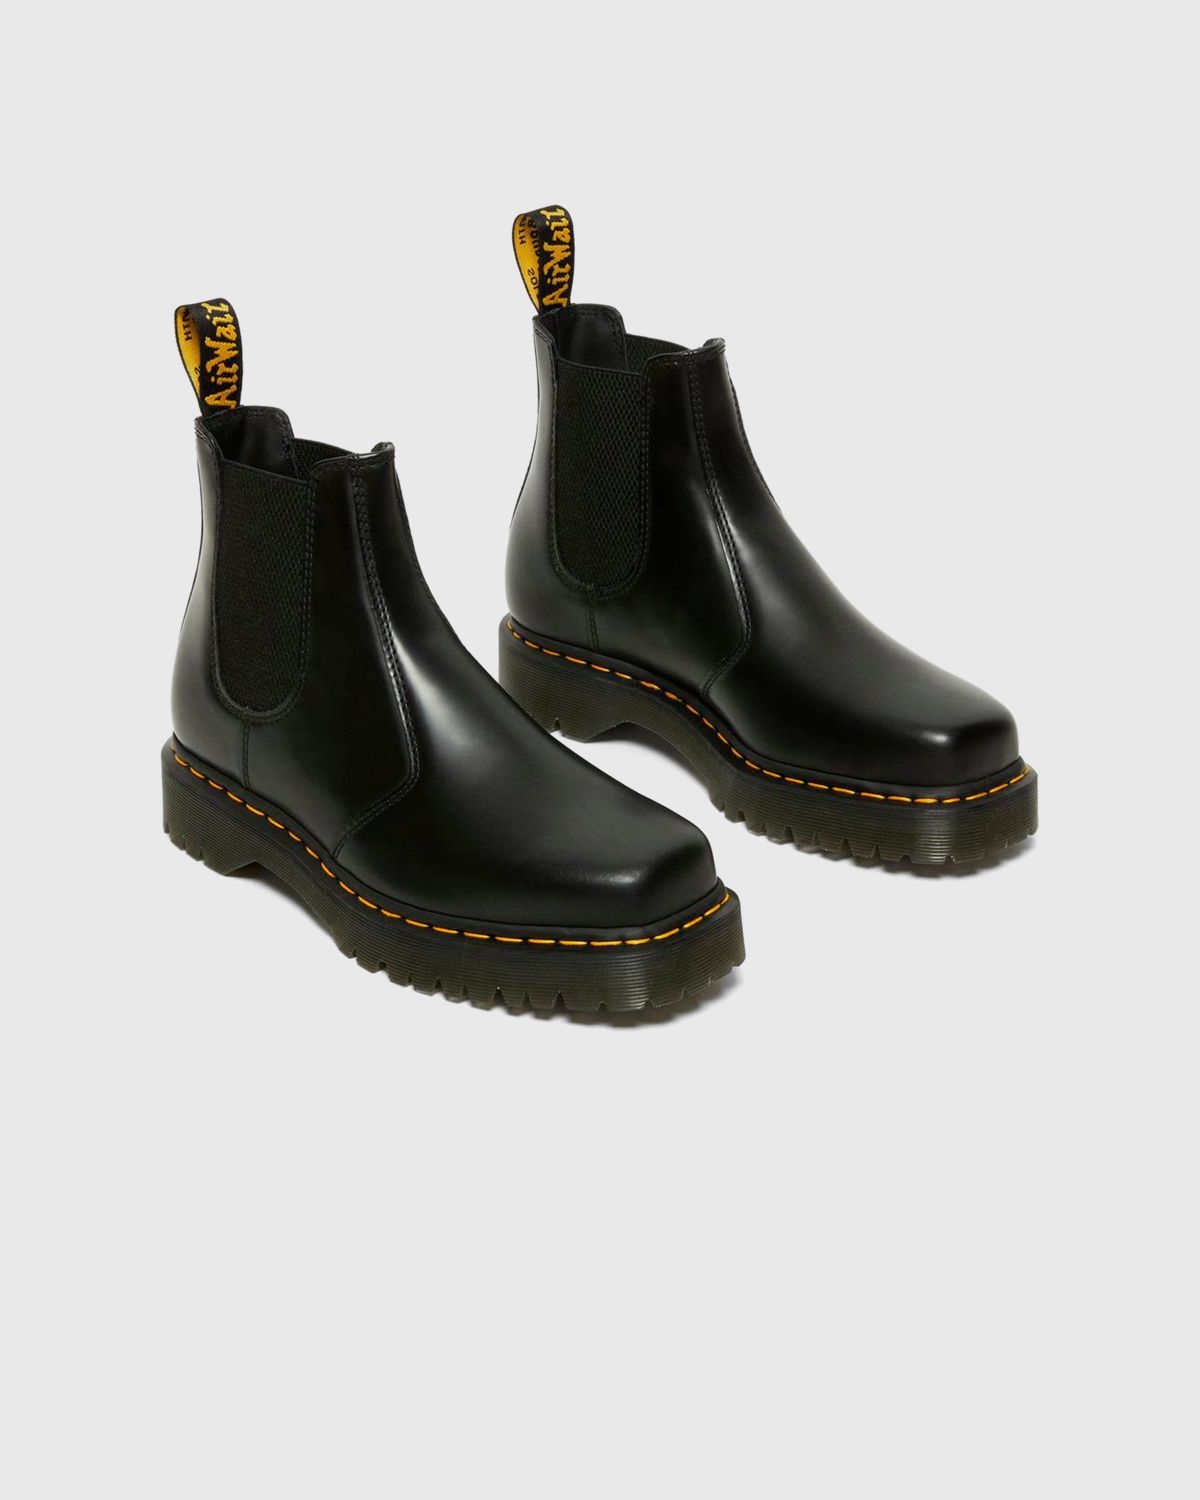 Dr. Martens – 2976 Bex Squared Black Polished Smooth - Shoes - Black - Image 3